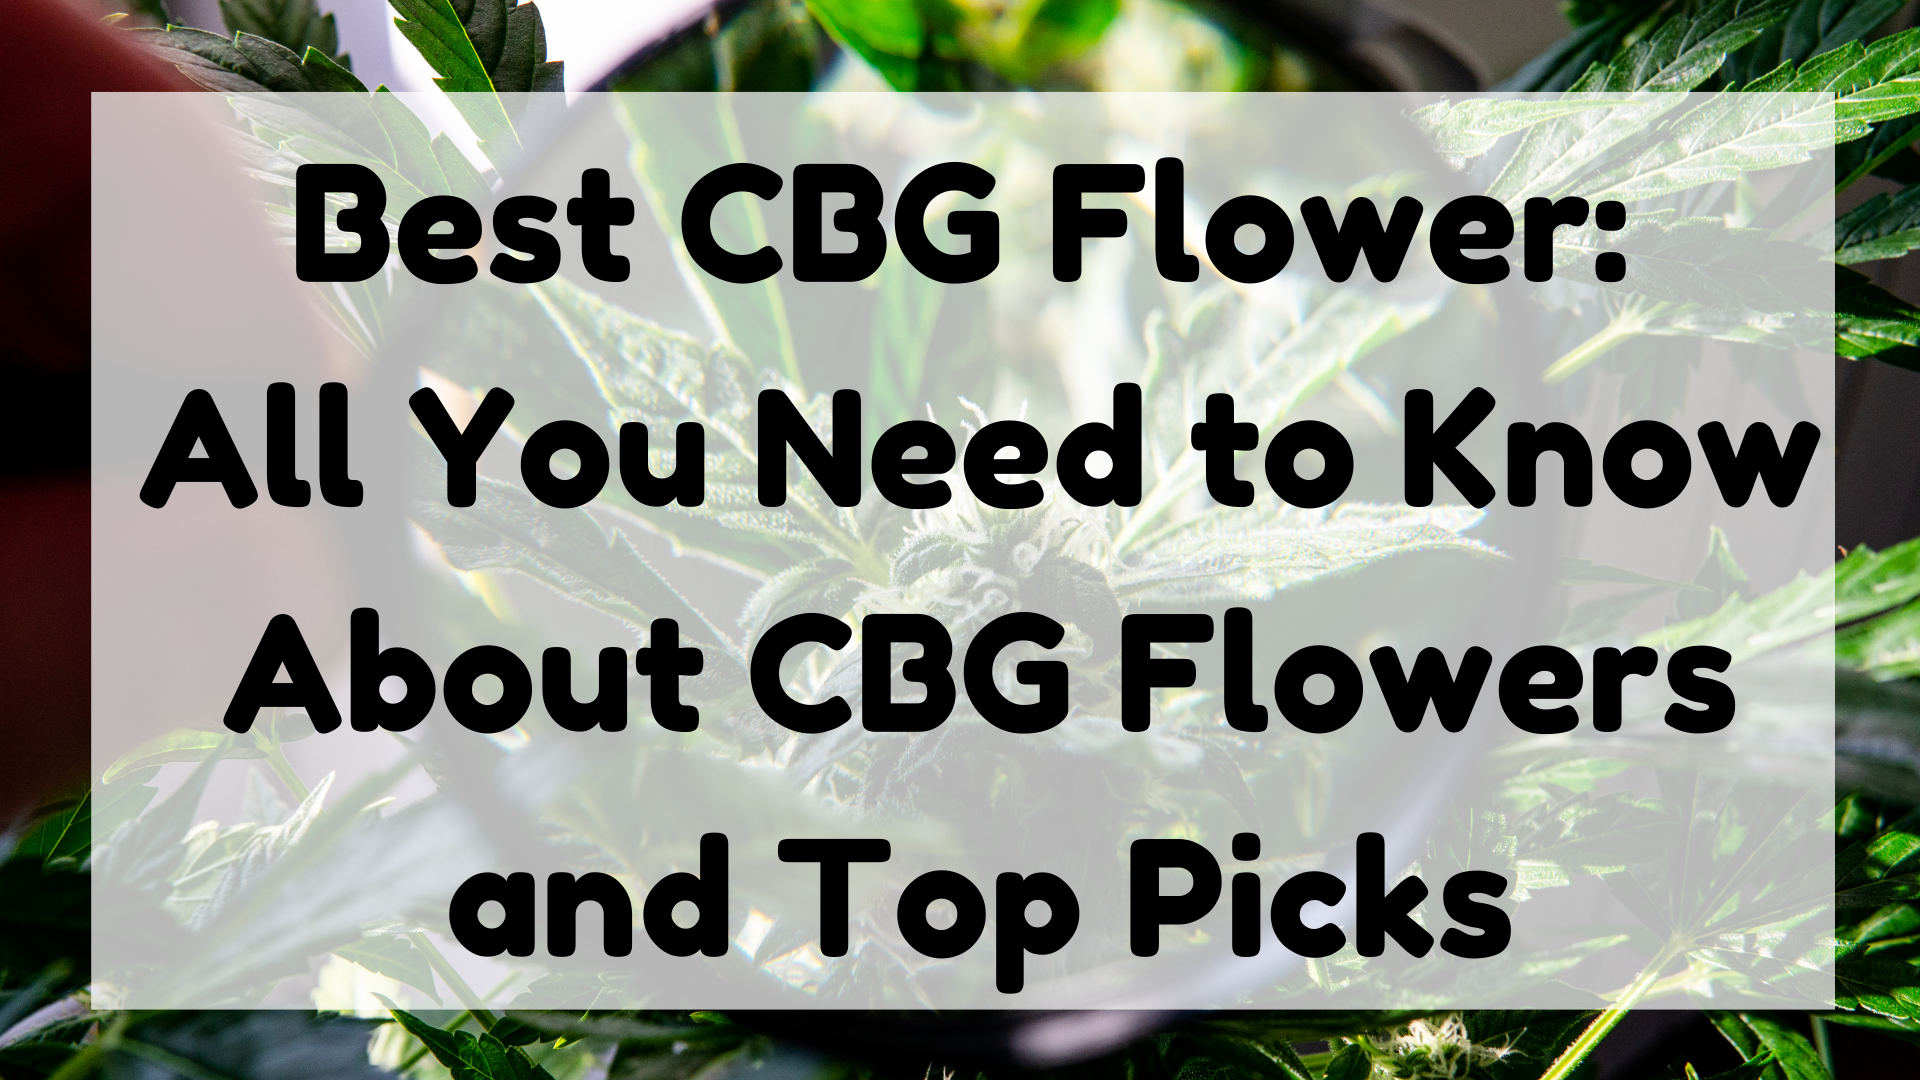 Best CBG Flower featured image